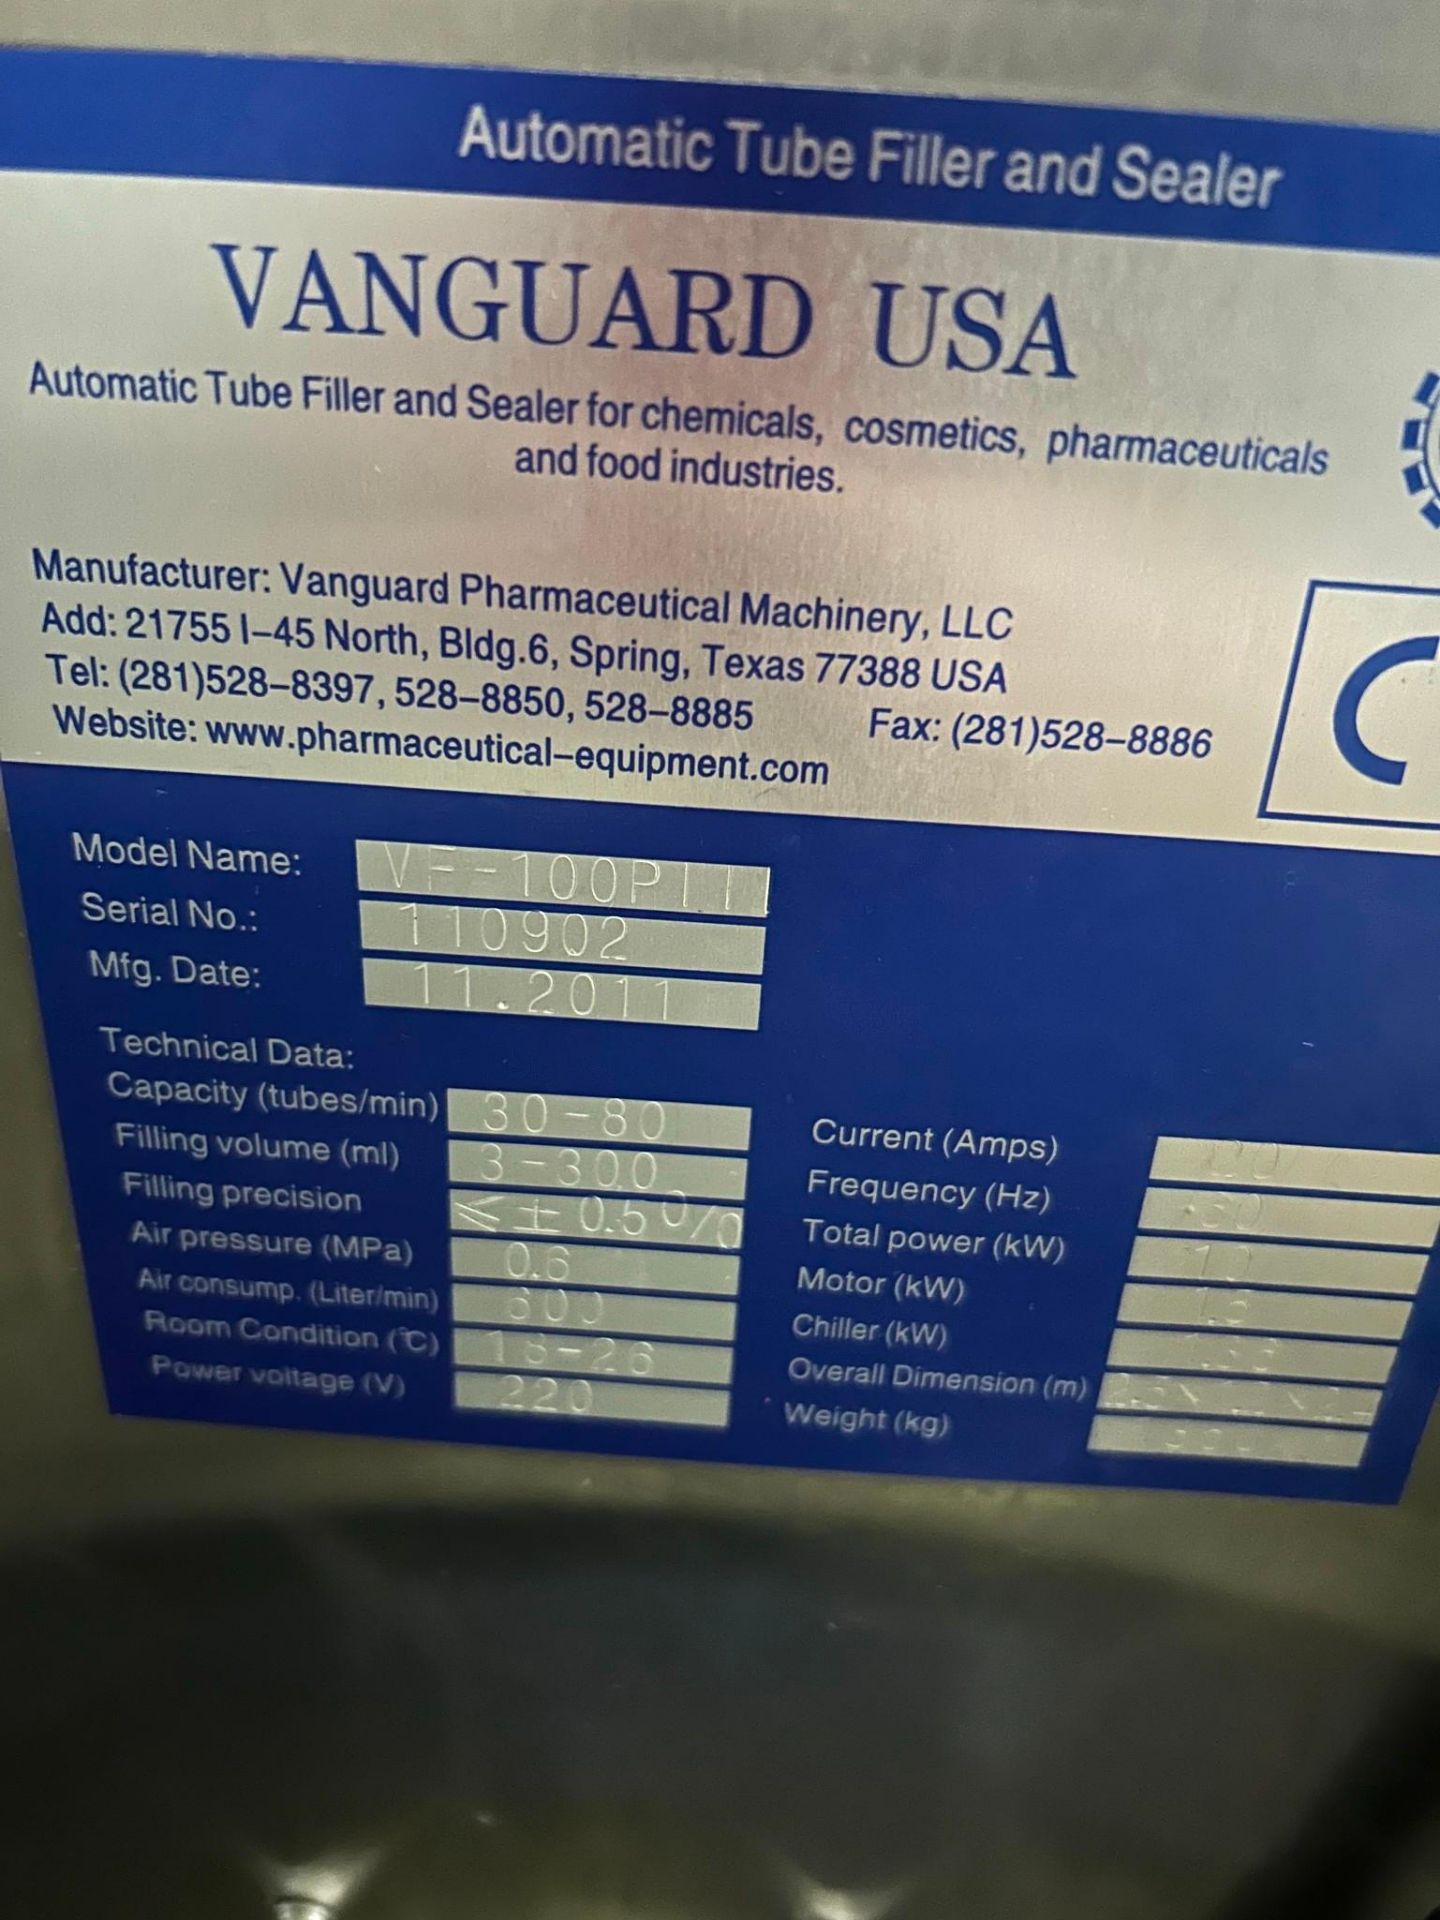 VANGUARD VF-100PIII TUBE FILLER, YEAR 2011 - Image 8 of 8